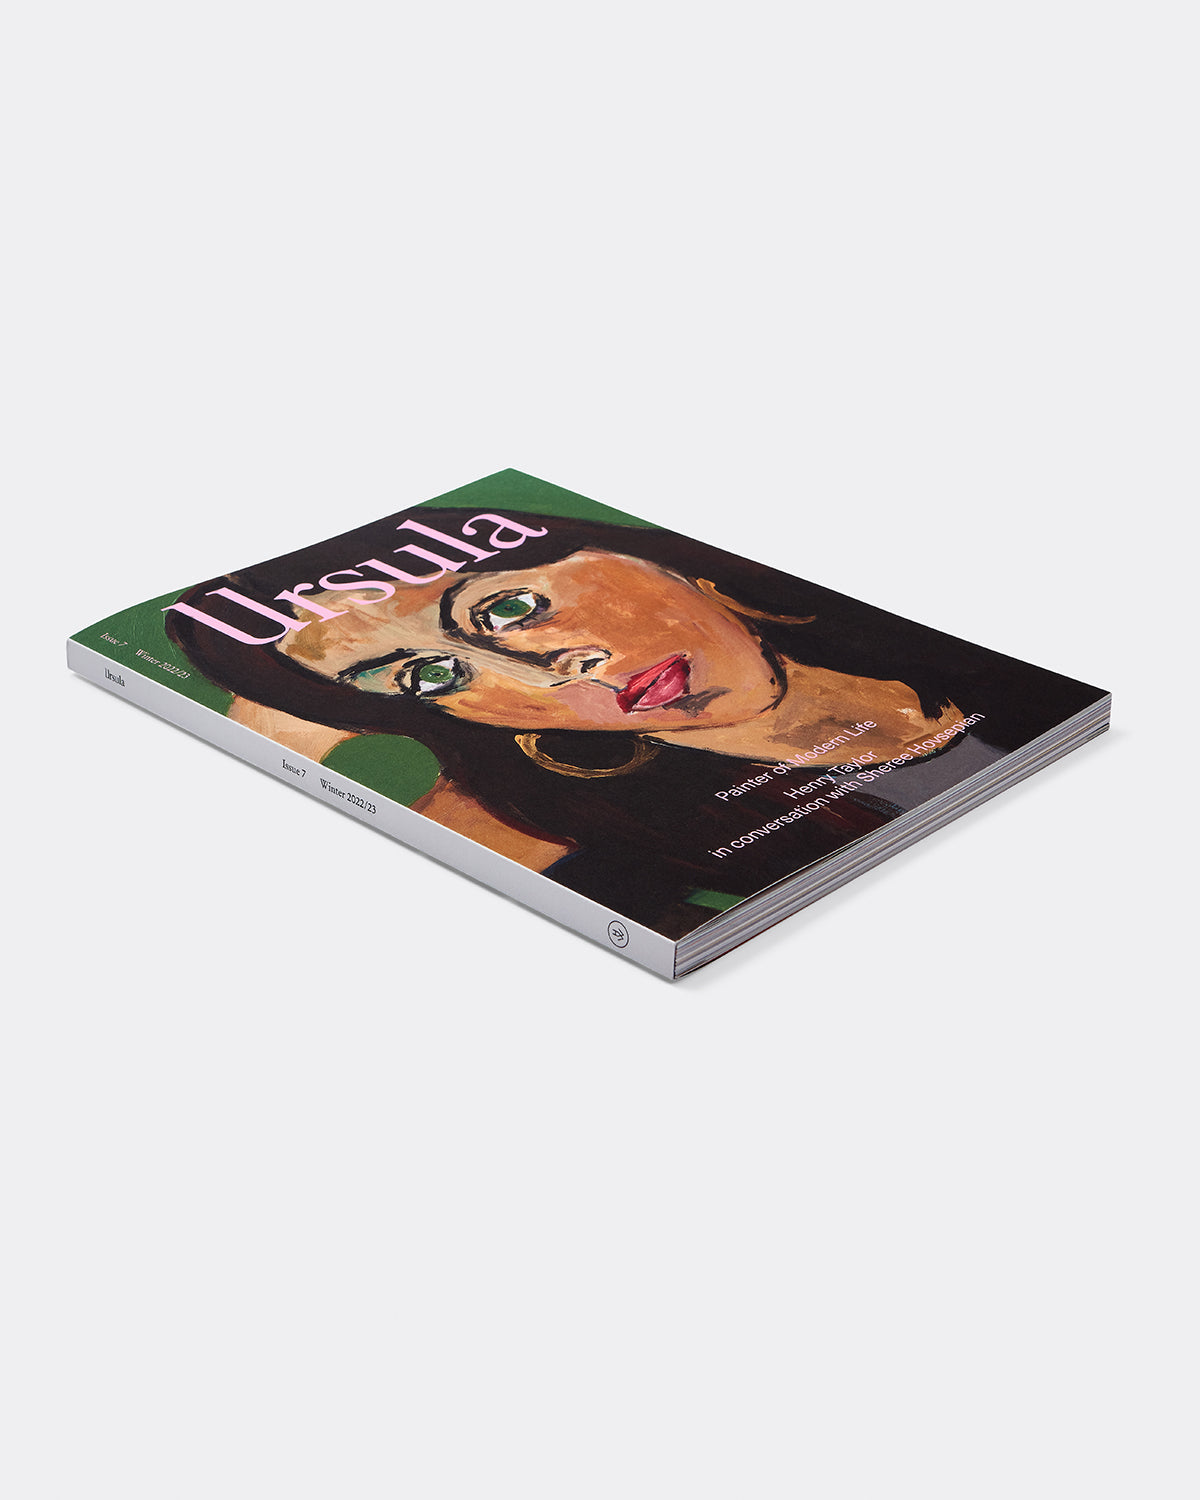 Ursula: Issue 7